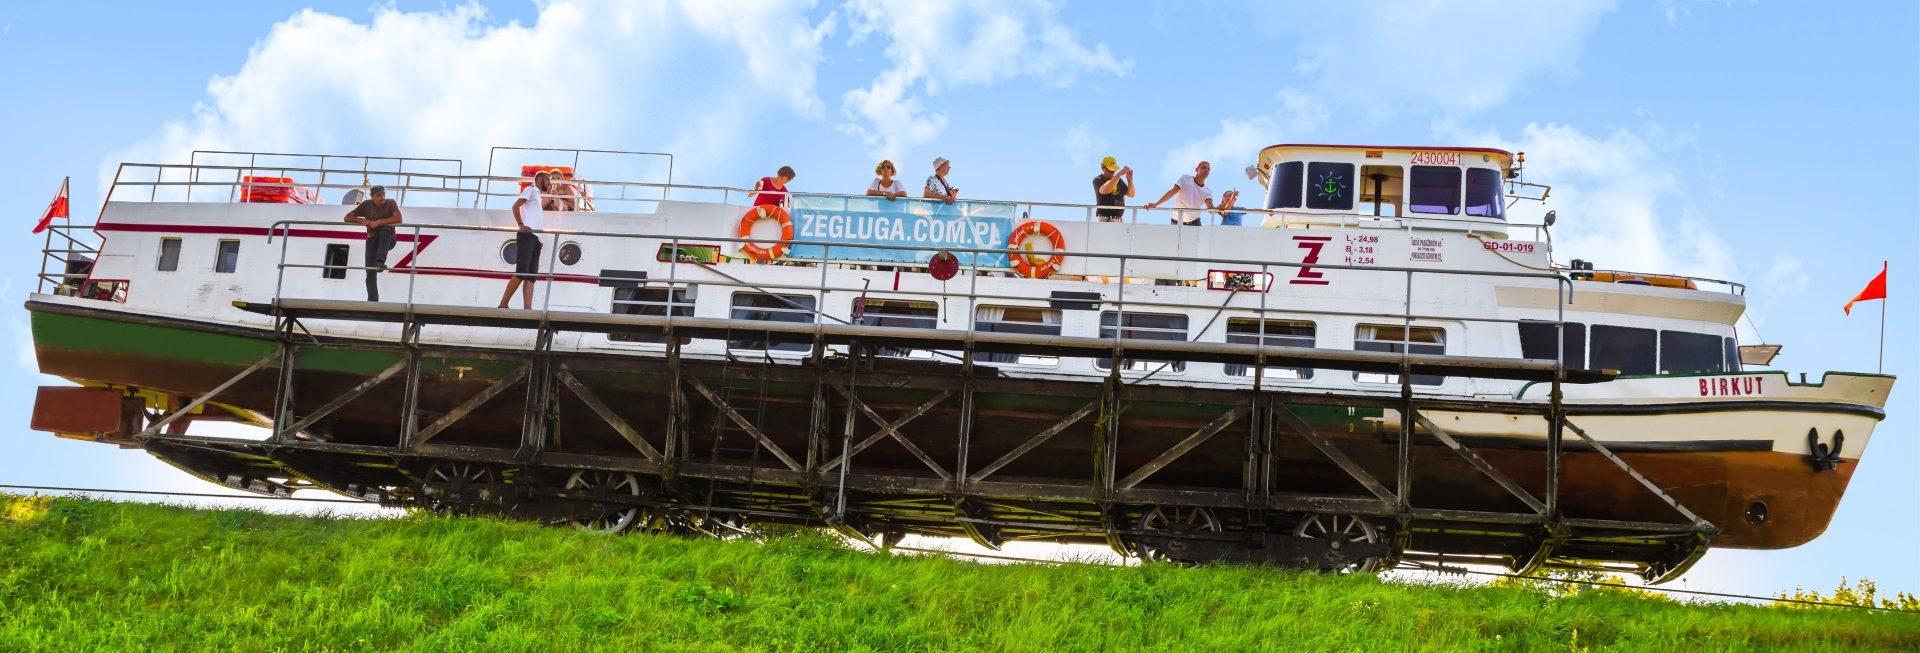 Na zdjęciu statek Żeglugi Ostródzko-Elbląskiej na wózku,  przemieszczający się po torowisku, które znajduje się na trawiastym wzniesieniu. Na statku znajdują się turyści obserwujący trasę.  